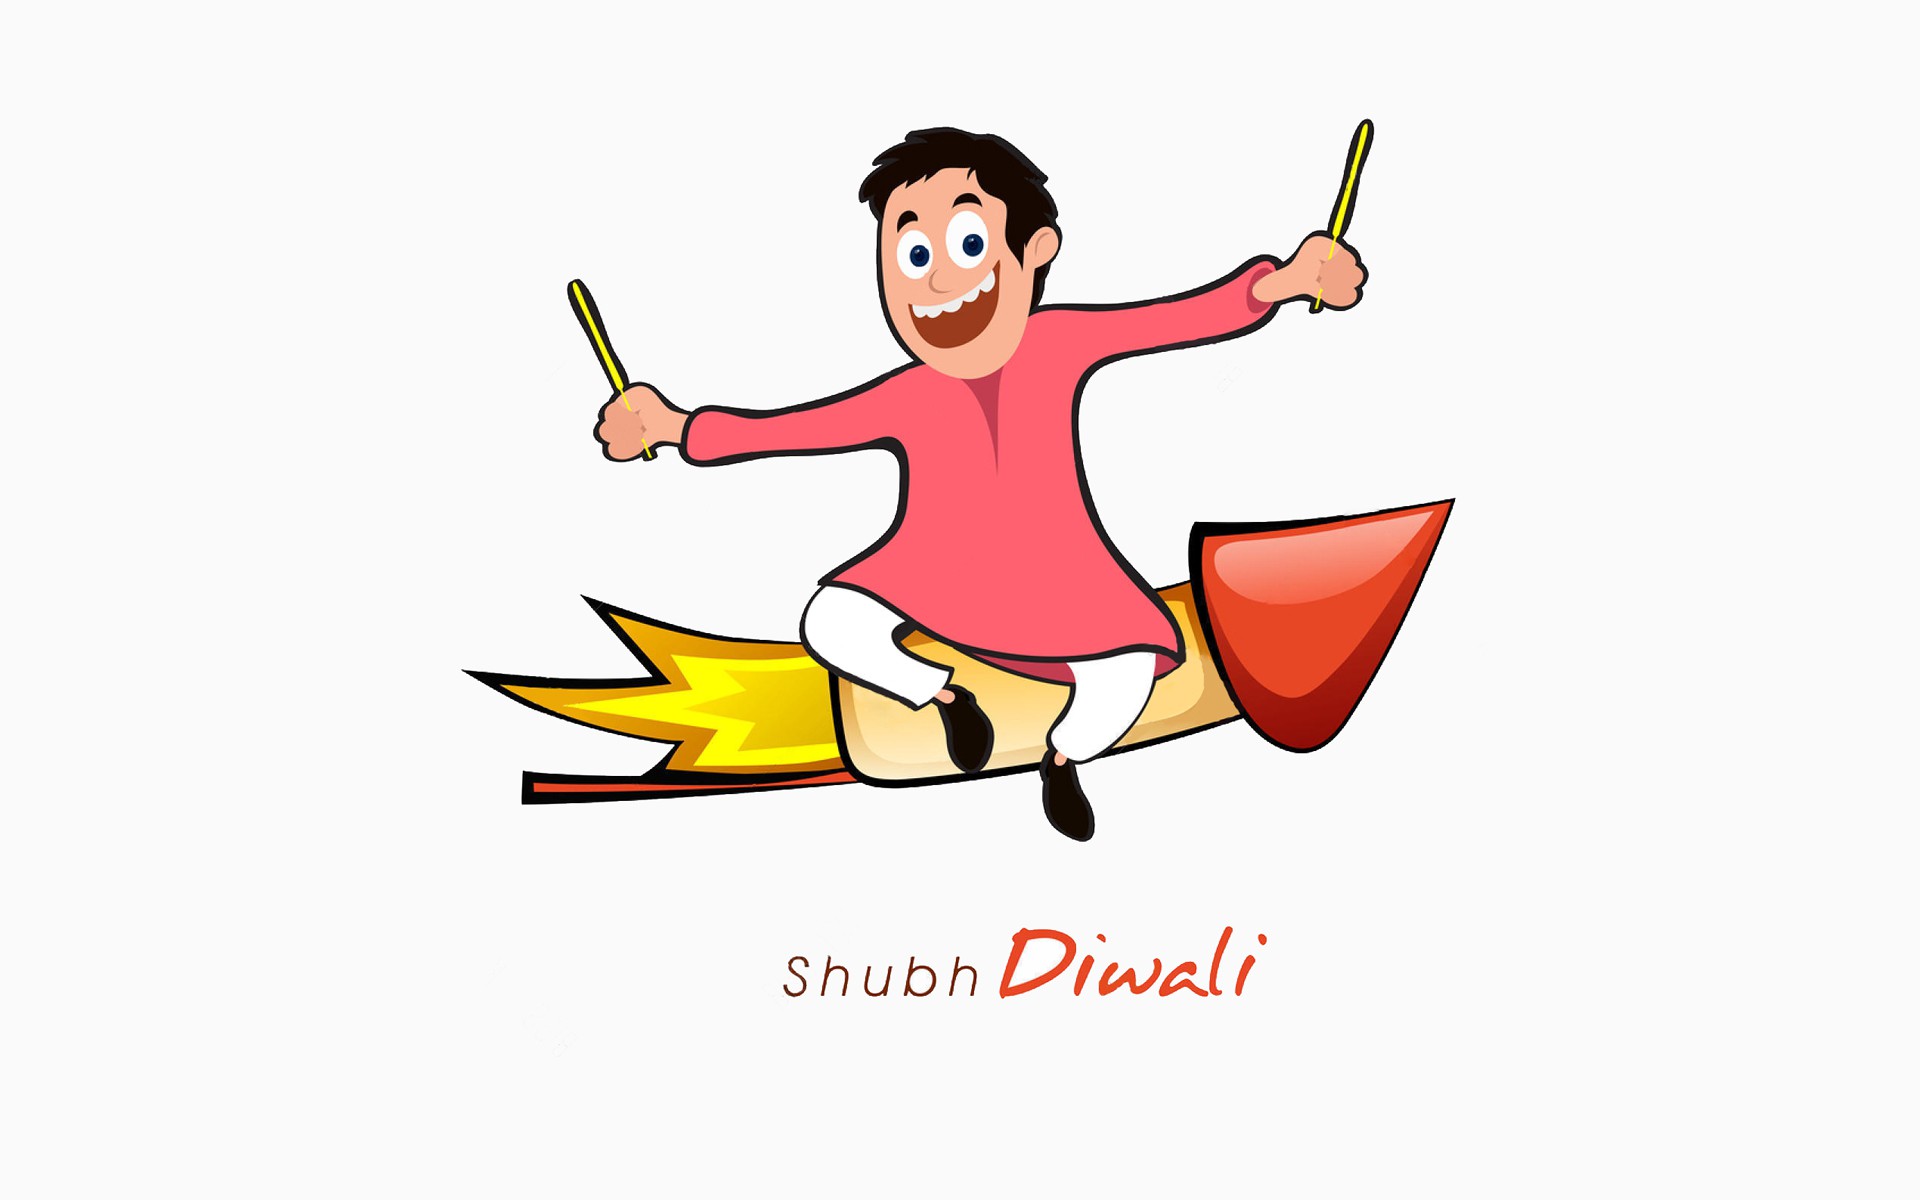 shubh diwali fun greetings hd images